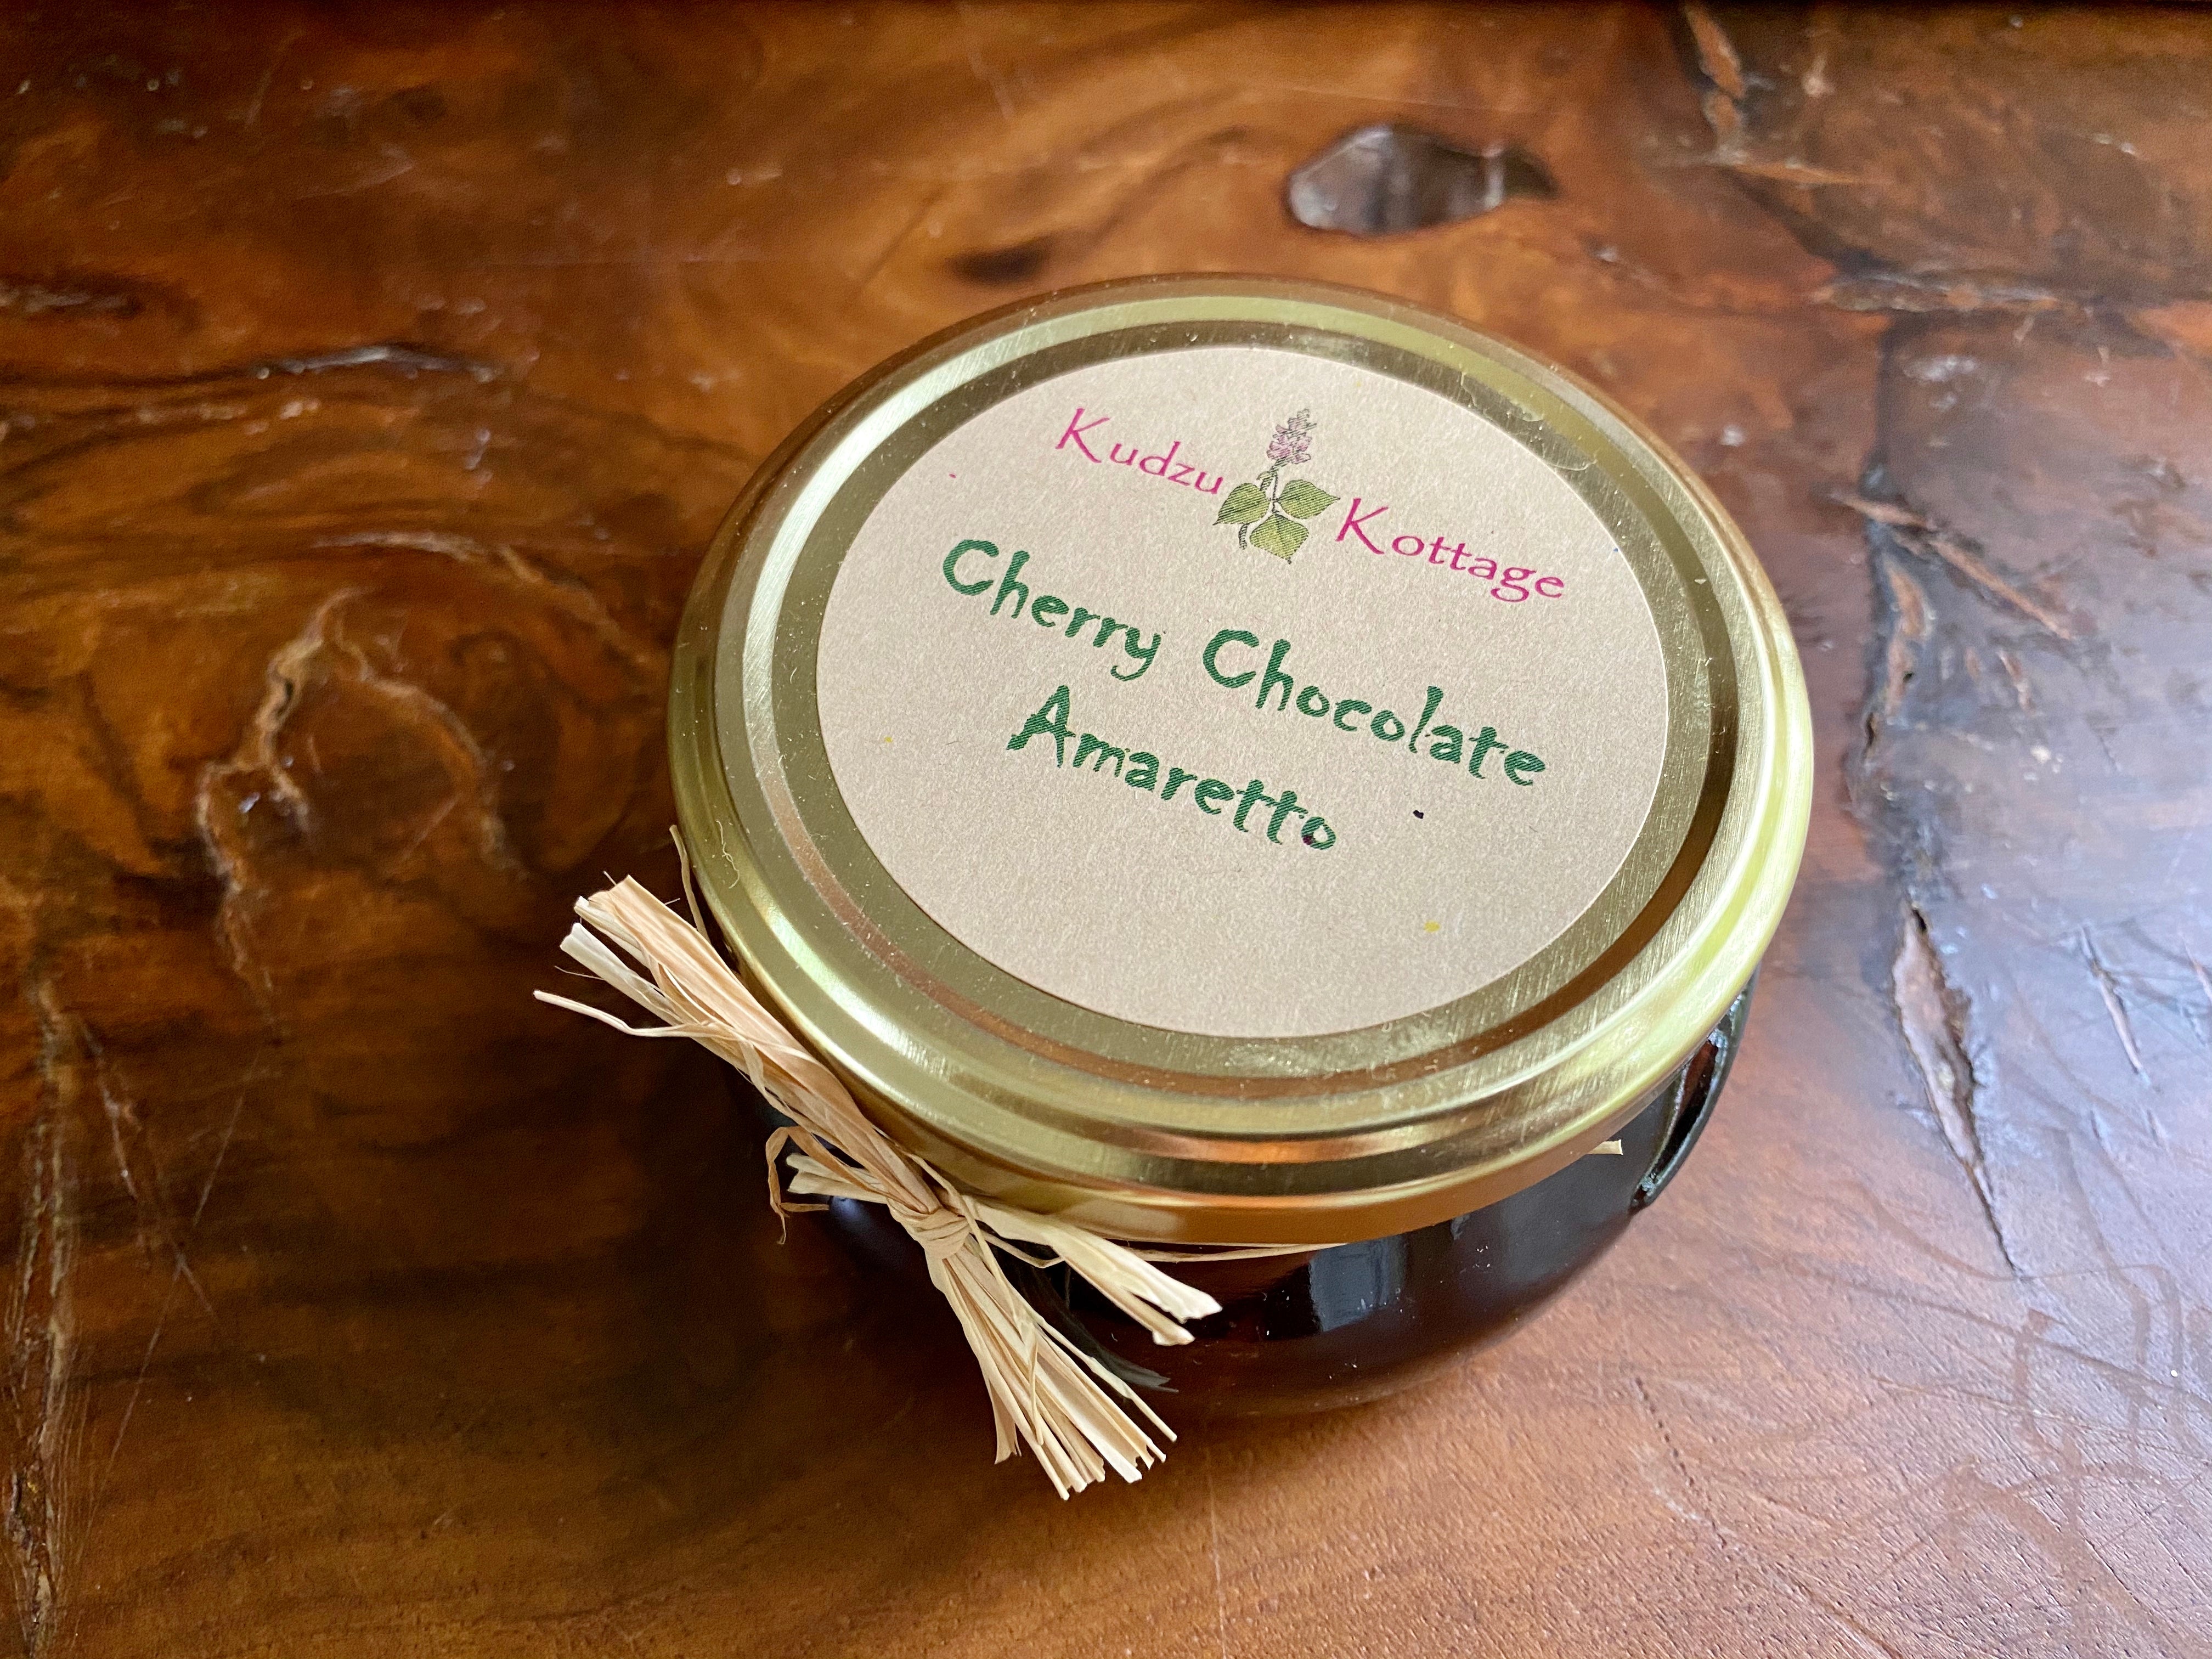 Cherry Chocolate Amaretto